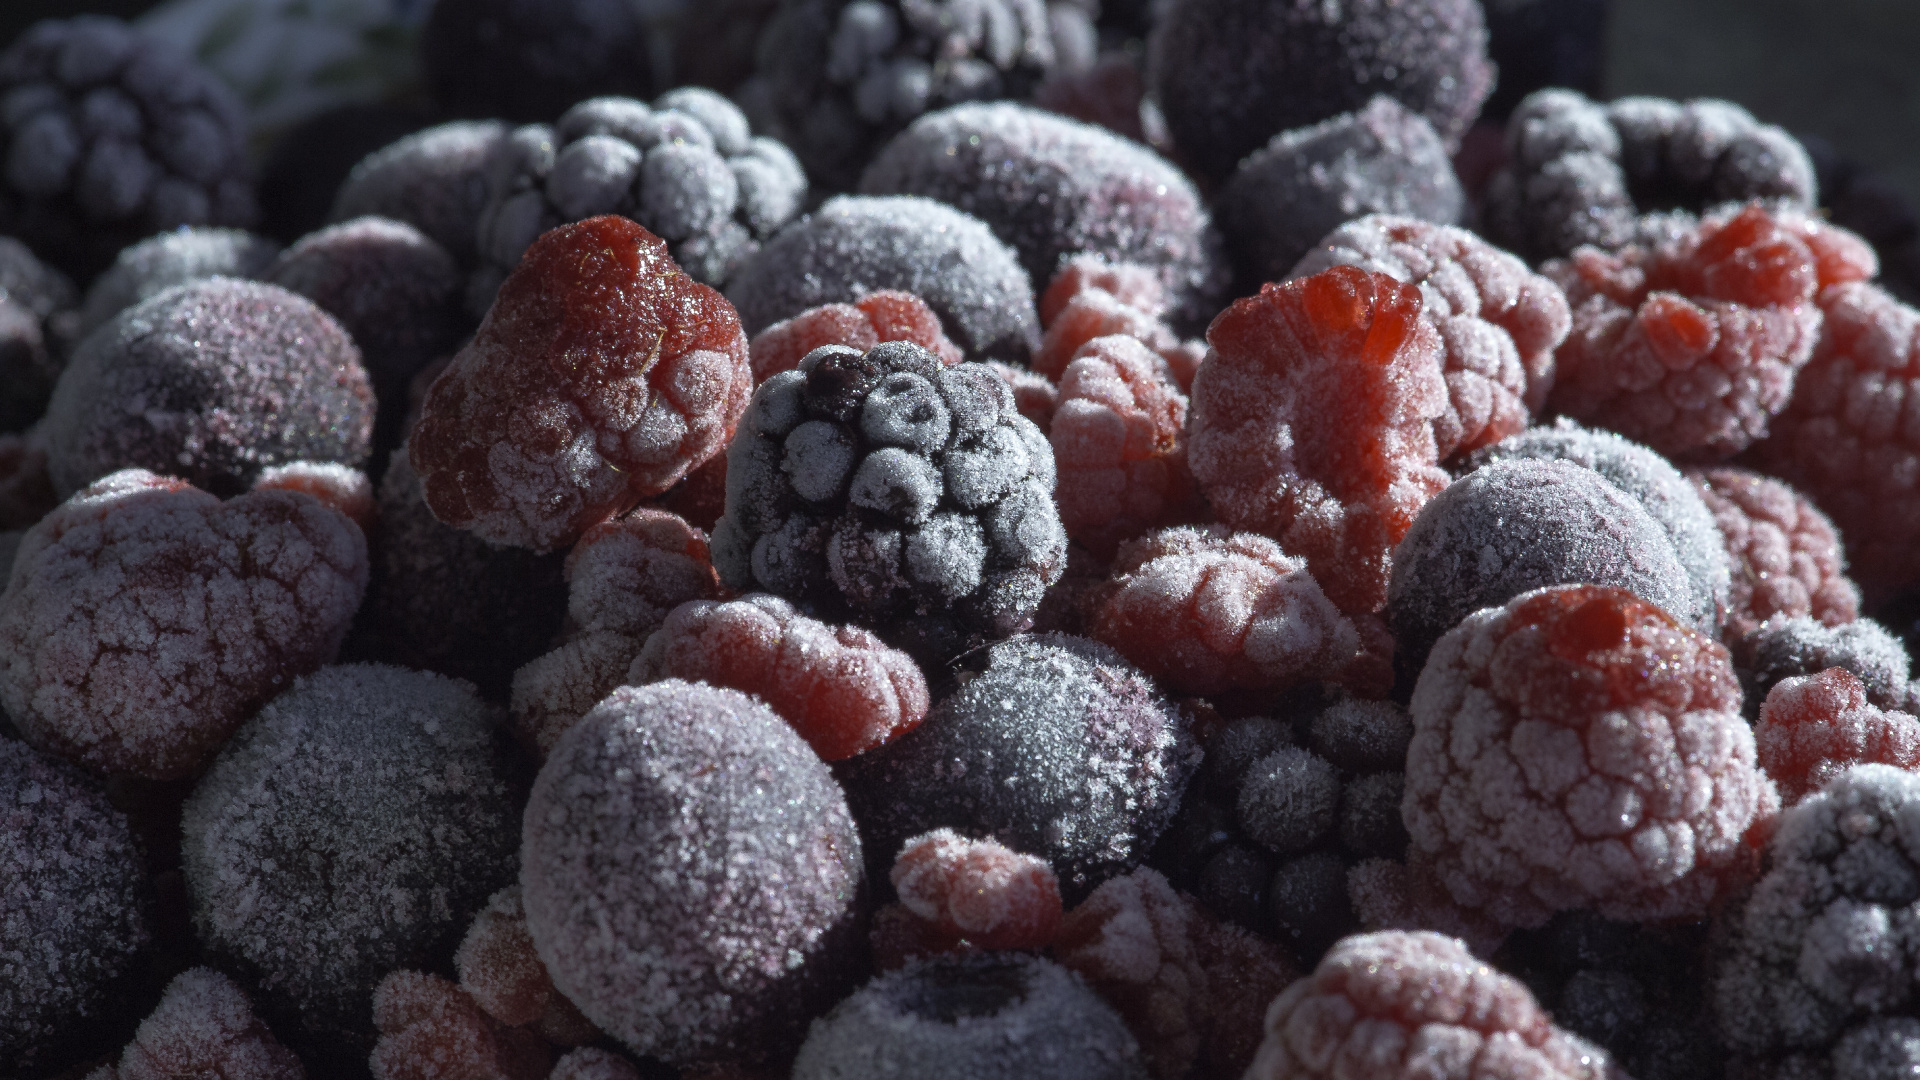 蓝莓, 树莓, 食品, 天然的食物, 甜头 壁纸 1920x1080 允许